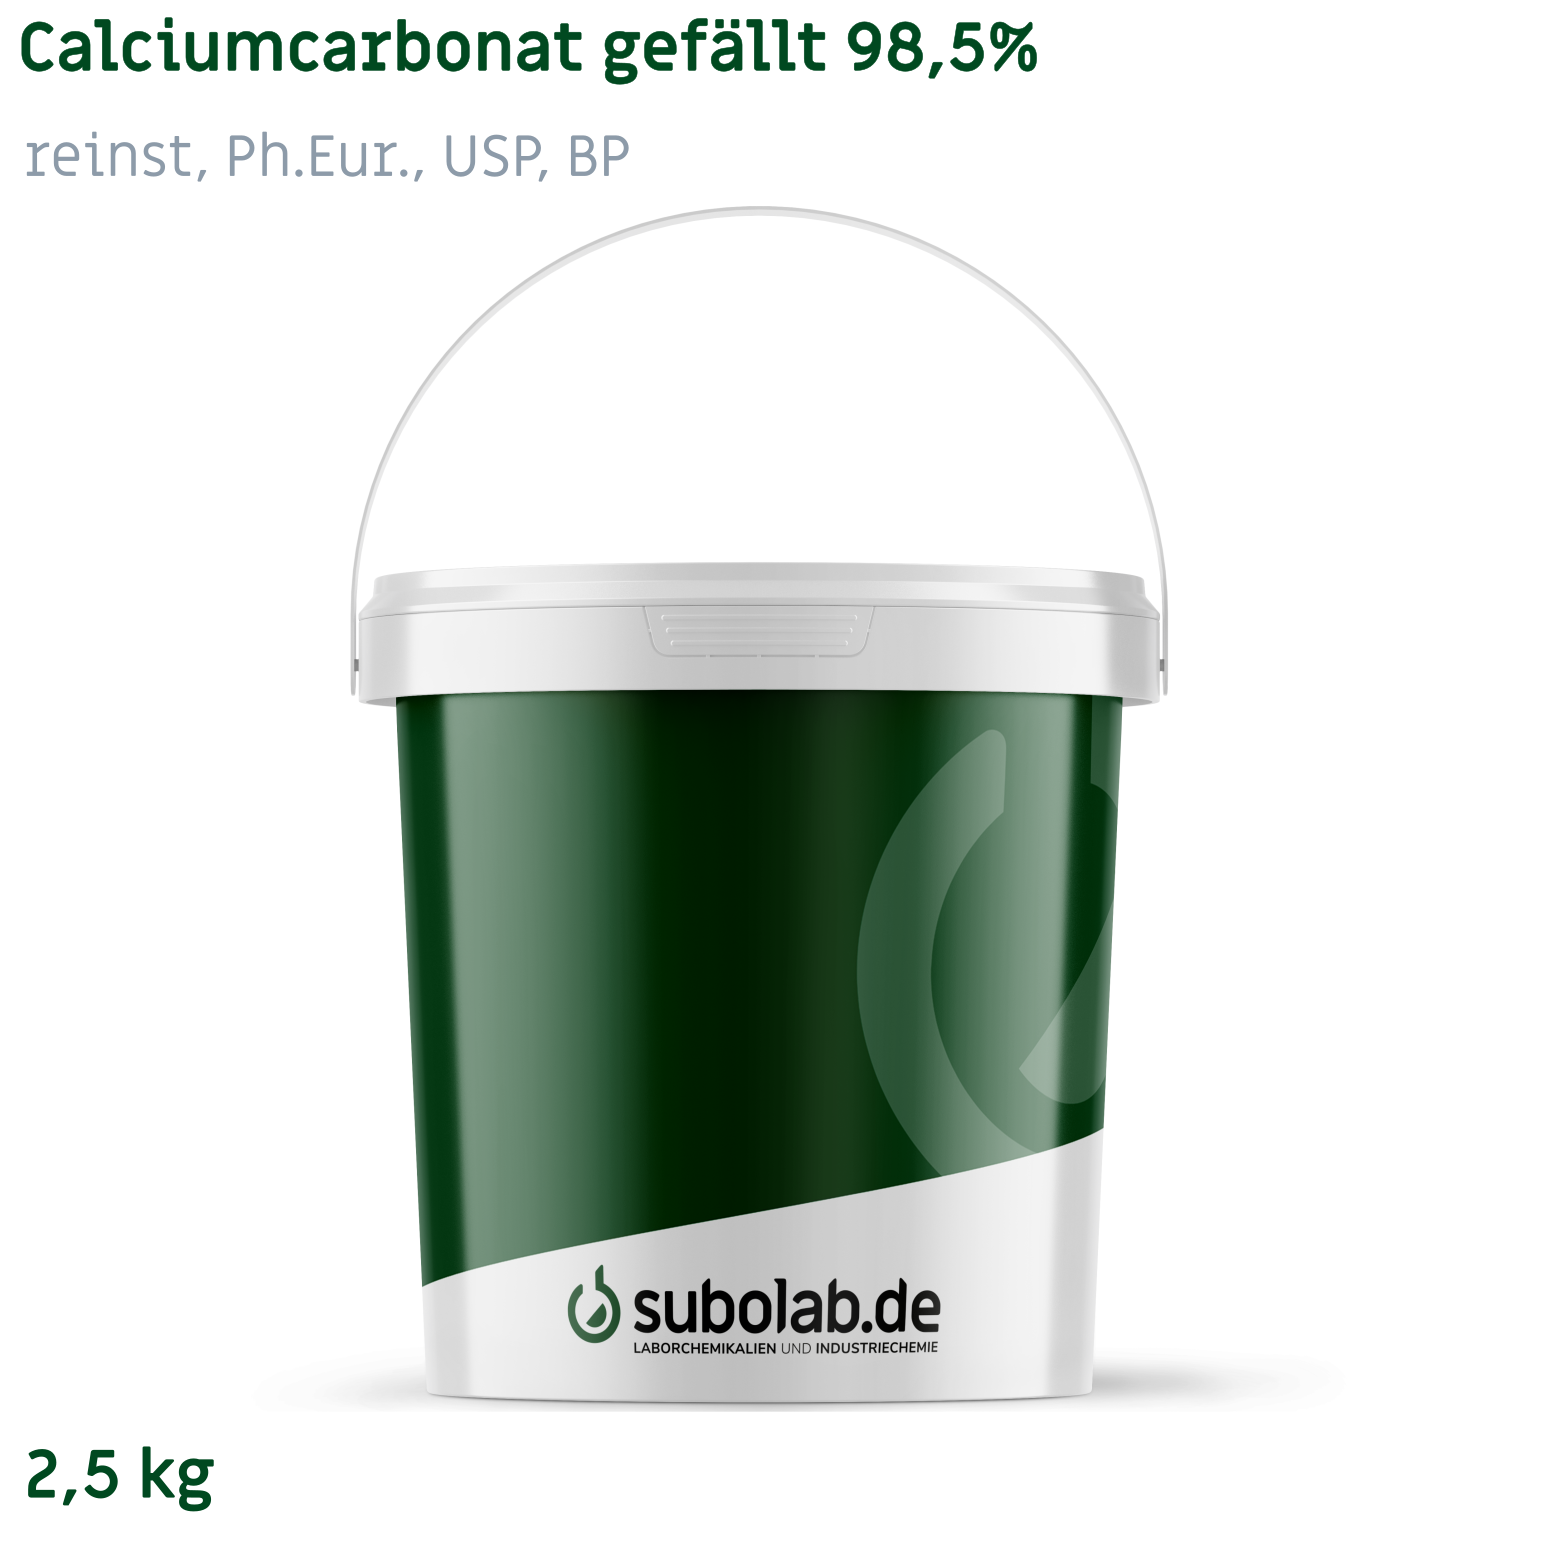 Bild von Calciumcarbonat gefällt 98,5% reinst, Ph.Eur., USP, BP (2,5 kg)